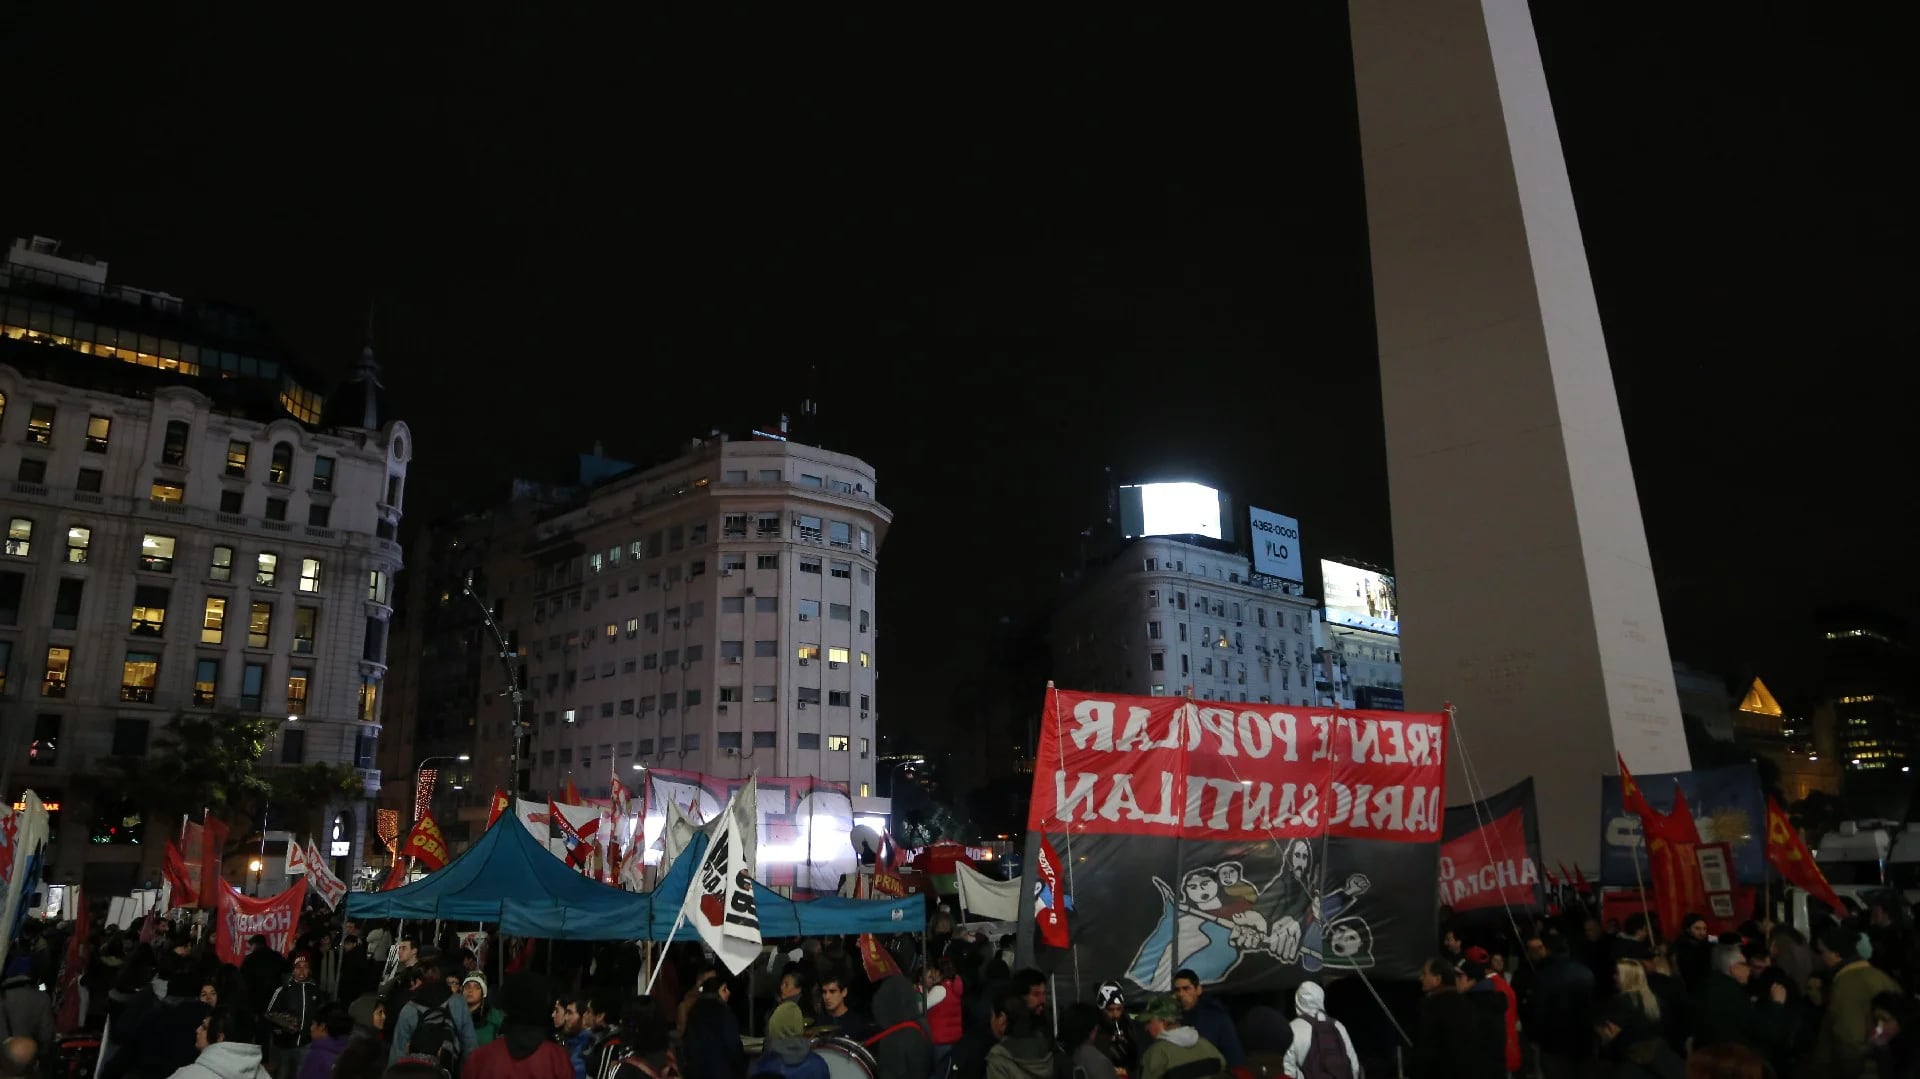 El Obelisco, otra vez escenario de una protesta (Nicolás Aboaf)